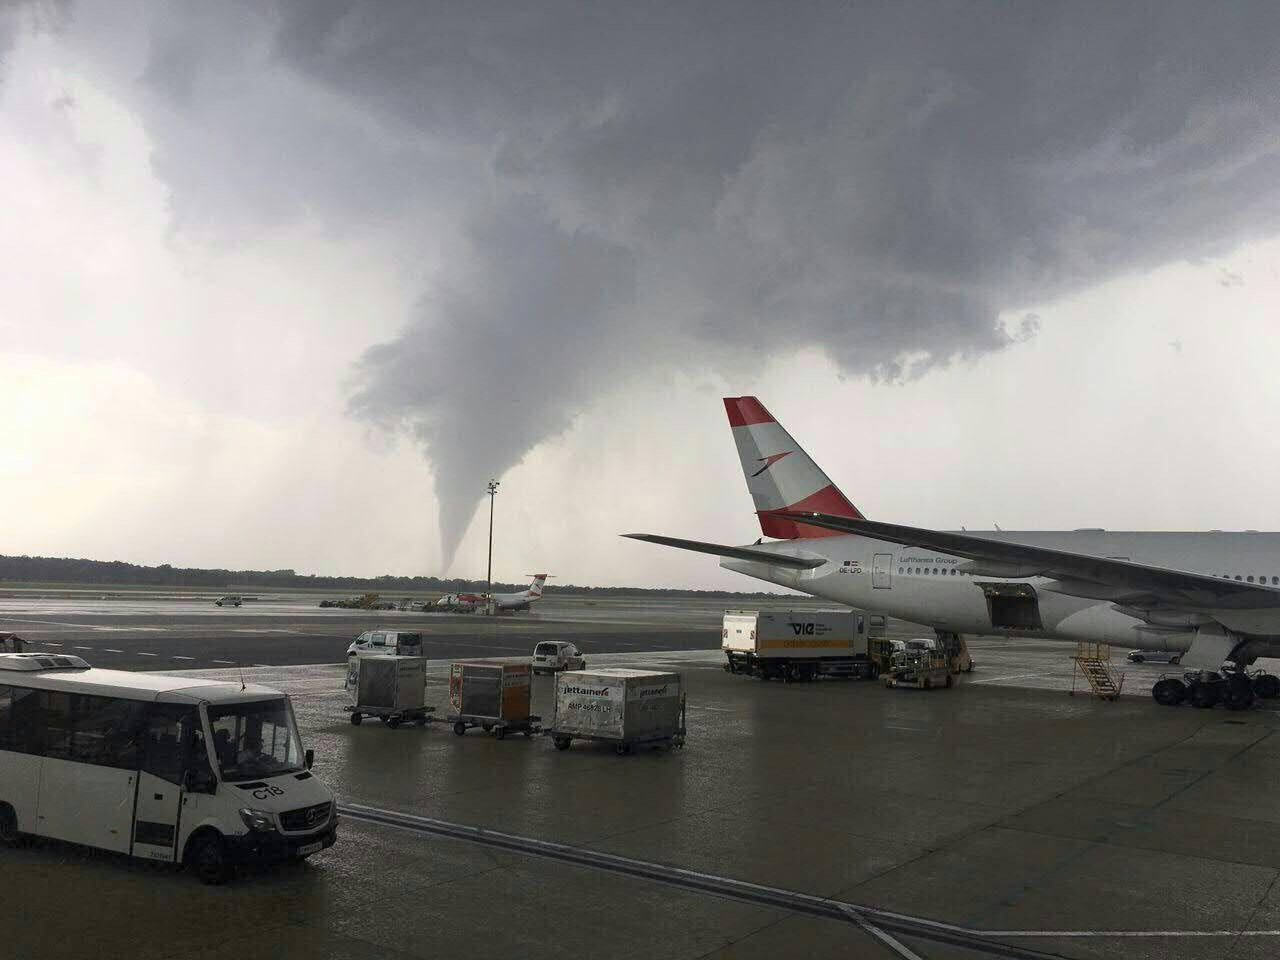 Über dem Flughafen Wien Schwechat war ein Tornado zu sehen